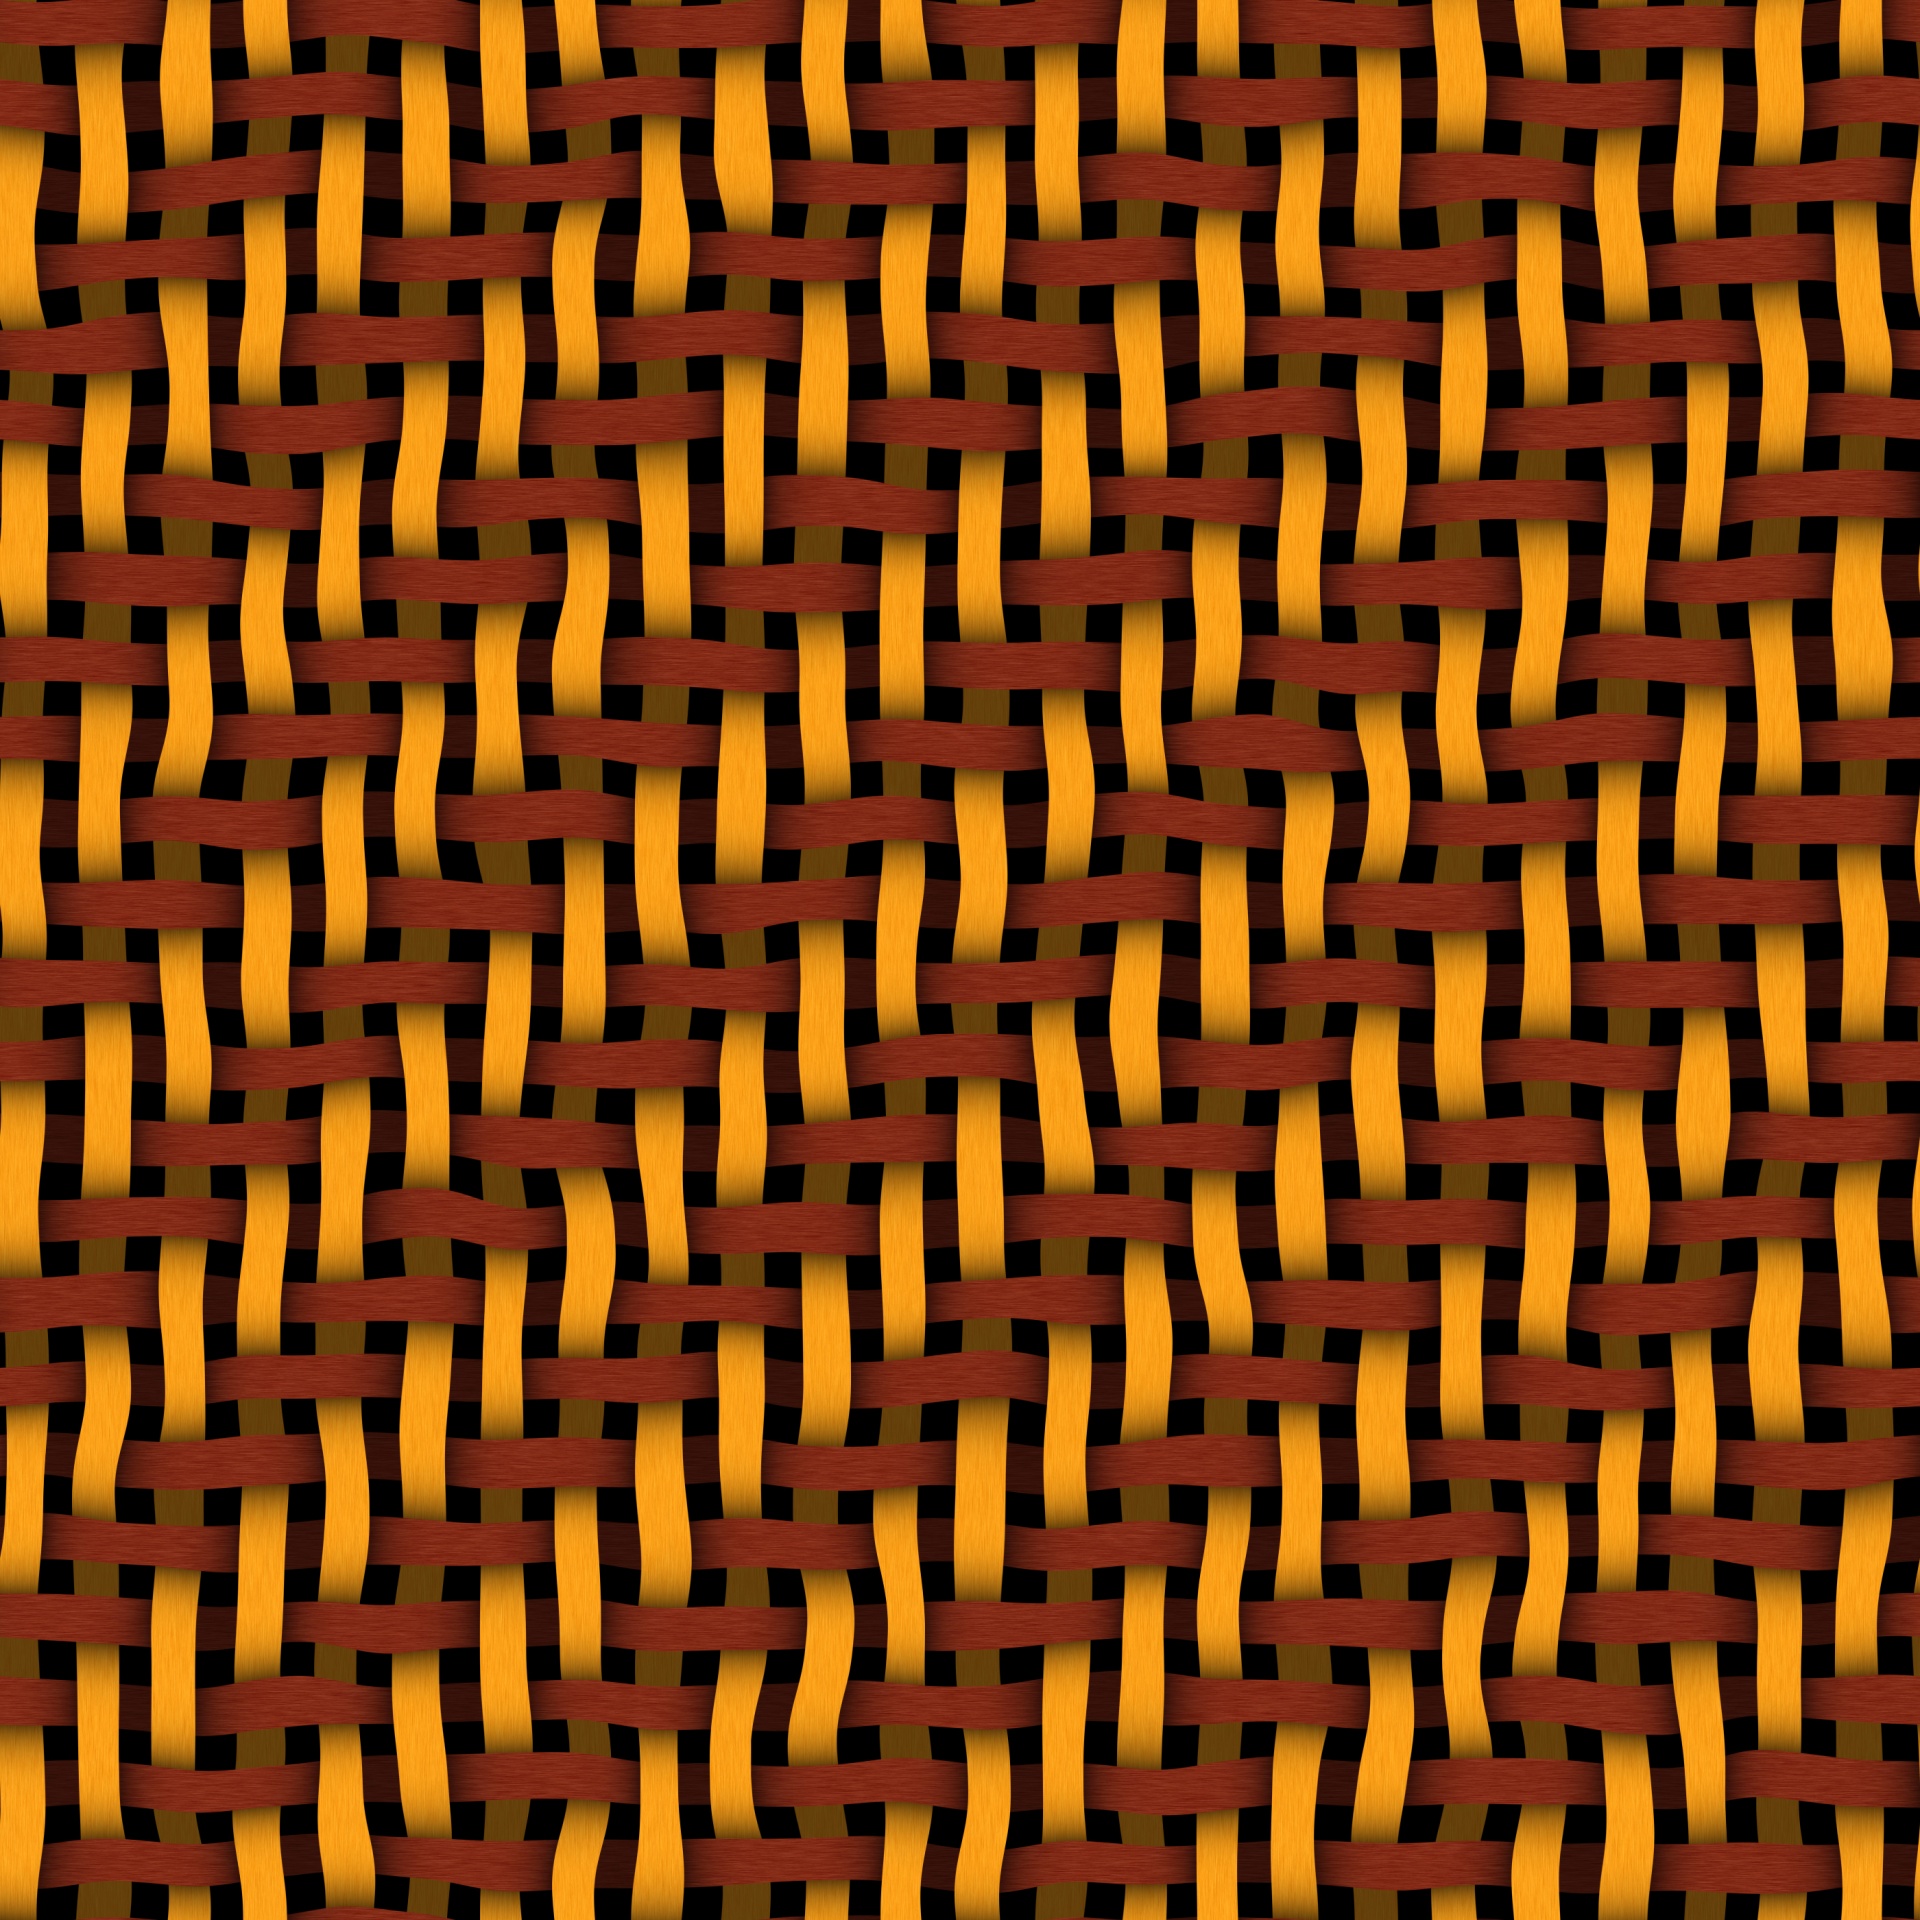 wood weave pattern free photo